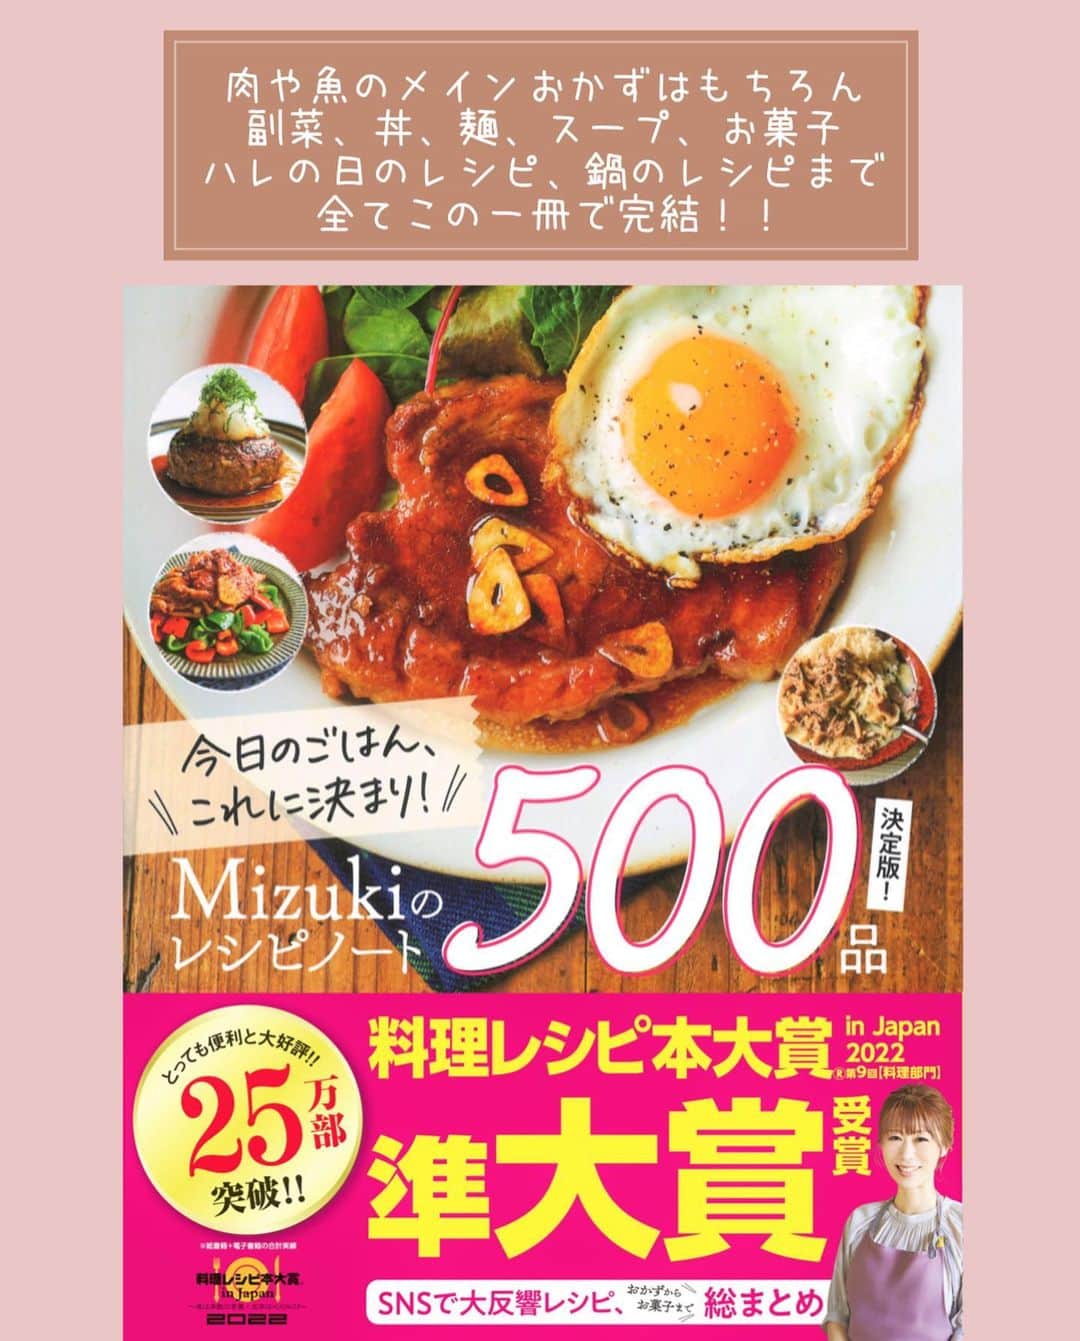 Mizuki【料理ブロガー・簡単レシピ】さんのインスタグラム写真 - (Mizuki【料理ブロガー・簡単レシピ】Instagram)「・一気に焼くだけ🍆 ⁡ ［#レシピ ］ ーーーーーーーーーーーーー 鶏肉となすのごまだれ炒め ーーーーーーーーーーーーー ⁡ ⁡ ⁡ おはようございます☺️ ⁡ 今日ご紹介させていただくのは \ 鶏肉となすのごまだれ炒め / ⁡ 鶏肉となすを一緒に焼いて たれをからめるだけの簡単レシピ💕 ごまたっぷりの甘辛味で ごはんもお酒もすすみますよ〜👌 ⁡ フライパンひとつでできるので よかったらお試し下さいね😋 ⁡ ⁡ ⁡ ⋱⋰ ⋱⋰ ⋱⋰ ⋱⋰ ⋱⋰ ⋱⋰ ⋱⋰ ☑︎簡単・時短・節約レシピ更新中 @mizuki_31cafe ⁡ ☑︎謎の暮らし＆変なライブ垢 @mizuki_kurashi ⋱⋰ ⋱⋰ ⋱⋰ ⋱⋰ ⋱⋰ ⋱⋰ ⋱⋰ ⁡ ⁡ ⁡ ＿＿＿＿＿＿＿＿＿＿＿＿＿＿＿＿＿＿＿ 【2人分】 鶏もも肉...1枚(250g) 塩こしょう...少々 片栗粉...大1 なす...2本 ごま油...大2 ⚫︎醤油・みりん・ごま...各大1.5 ⚫︎砂糖...大1/2 ⚫︎生姜チューブ...1cm ⁡ 1.鶏肉は2cm大に切り、塩こしょうを振って片栗粉をまぶす。なすは一口大に切り、水に5分晒して水気を拭く。⚫︎は合わせておく。 2.フライパンにごま油を中火で熱し、鶏肉となすを(どちらも皮目から)焼く。焼き色が付いたら裏返し、更に焼いて火を通す。 3.⚫︎を加えて煮からめる。 ￣￣￣￣￣￣￣￣￣￣￣￣￣￣￣￣￣￣￣ ⁡ ⁡ 《ポイント》 ♦︎鶏肉は小さめに切るとなすと同じタイミングで火が通ります♩ ♦︎なすの水気は拭き、皮から焼く(皮に油をコーティングする)と色よく仕上がります♩フライパンに入れる時、皮が油に付くように入れると◎ ⁡ ⁡ ⁡ ⁡ ⁡ ⁡ 💬💬💬 昨日はヨシケイさんのライブ配信に お付き合いいただきまして ありがとうございました☺️🍳 ⁡(@yoshikeigroups )  ヨシケイさんのライブ配信は いつもゆるっと穏やかで 今回もとても楽しかったです😂 みなさんのコメントがやさしすぎて もなかちゃんも感激していました🥺💕 (ライブのアーカイブは 不具合が発生しているようで まだアップできないらしい•••😭) ⁡ さて、昨日ご紹介した 『ほったらかし煮献立』を含む 5日分のミールキット(お試し5days)は 現在ご注文いただけますので よかったらご活用くださいね😋💕 ⁡ ⁡ ⁡ ⁡ ⁡ ⁡ ⋱⋰ ⋱⋰ ⋱⋰ ⋱⋰ ⋱⋰ ⋱⋰ ⋱⋰  愛用している調理器具・器など   #楽天ROOMに載せてます ‎𐩢𐩺  (ハイライトから飛べます🕊️) ⋱⋰ ⋱⋰ ⋱⋰ ⋱⋰ ⋱⋰ ⋱⋰ ⋱⋰ ⁡ ⁡ ⁡ ⁡ ⁡ ⁡ ✼••┈┈┈┈┈••✼••┈┈┈┈┈••✼ 今日のごはんこれに決まり！ ‎𓊆#Mizukiのレシピノート 500品𓊇 ✼••┈┈┈┈┈••✼••┈┈┈┈┈••✼ ⁡ ˗ˏˋ おかげさまで25万部突破 ˎˊ˗ 料理レシピ本大賞準大賞を受賞しました✨ ⁡ 6000点の中からレシピを厳選し まさかの【500レシピ掲載】 肉や魚のメインおかずはもちろん 副菜、丼、麺、スープ、お菓子 ハレの日のレシピ、鍋のレシピまで 全てこの一冊で完結 𓌉◯𓇋 (全国の書店・ネット書店で発売中) ⁡ ⁡ ⁡ ⁡ ⁡ ⁡ #鶏肉となすのごまだれ炒めm #なす #なすレシピ #鶏肉 #鶏肉レシピ #ごまだれ #夏野菜  #夏野菜レシピ #節約料理 #簡単料理  #時短料理 #料理 #mizukiレシピ  #アルモンデ #時短レシピ #節約レシピ #簡単レシピ」7月2日 6時57分 - mizuki_31cafe